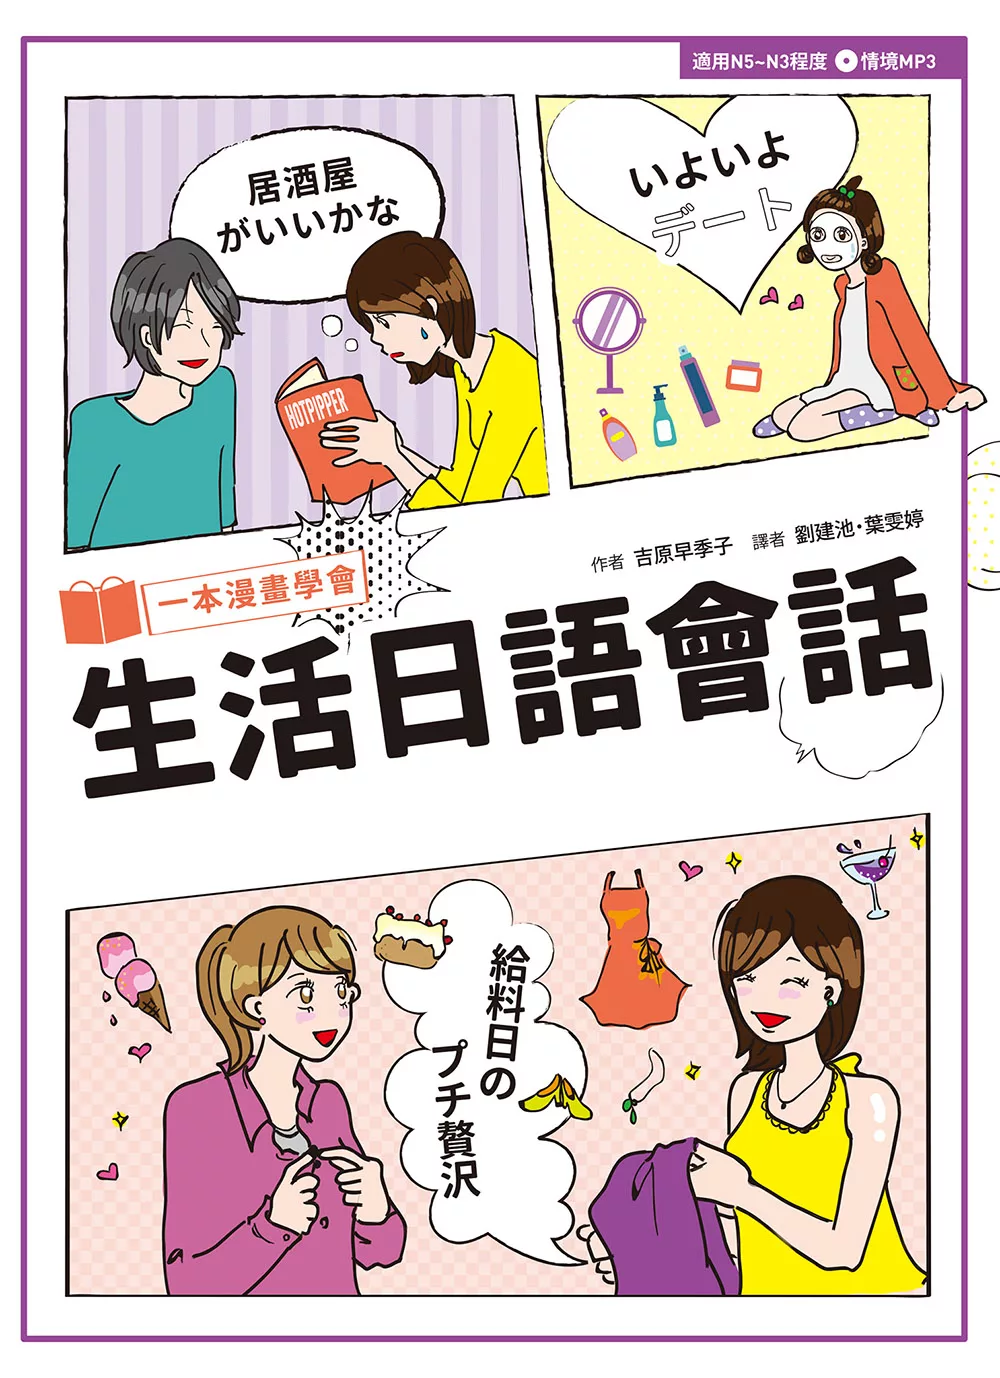 一本漫畫學會生活日語會話 (電子書)